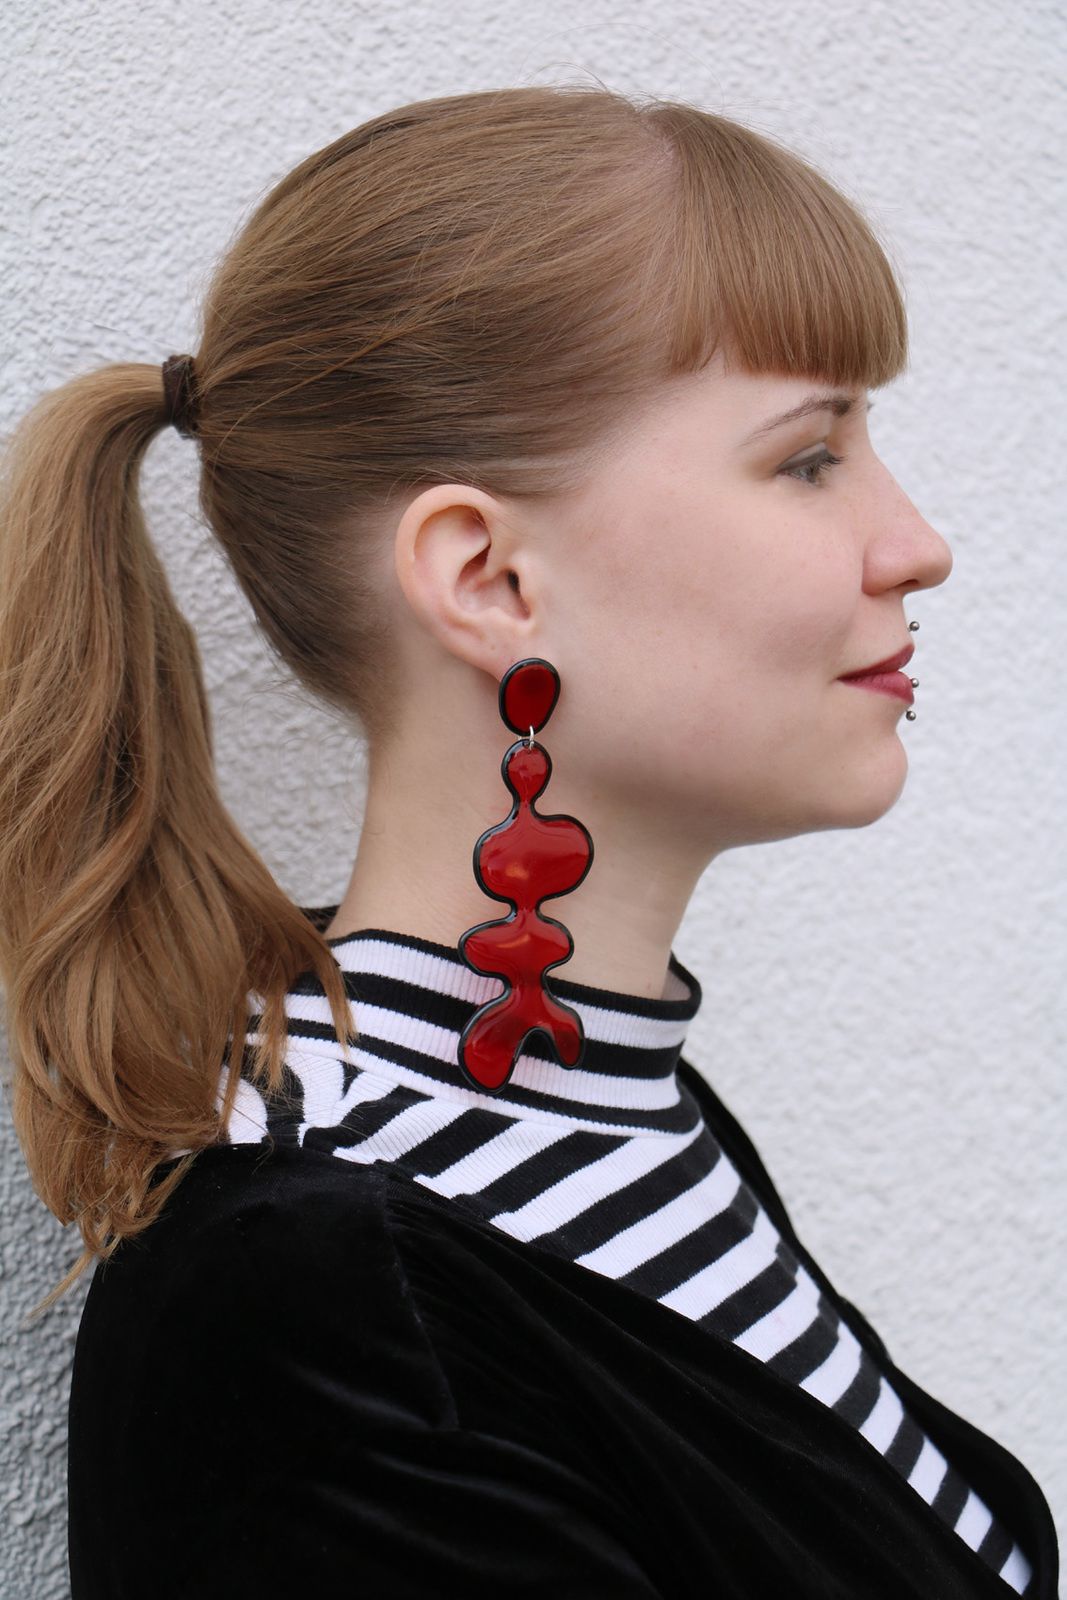 Megagroße Ohrringe in Rot und Schwarz aus Kunstharz von Edna Mo.